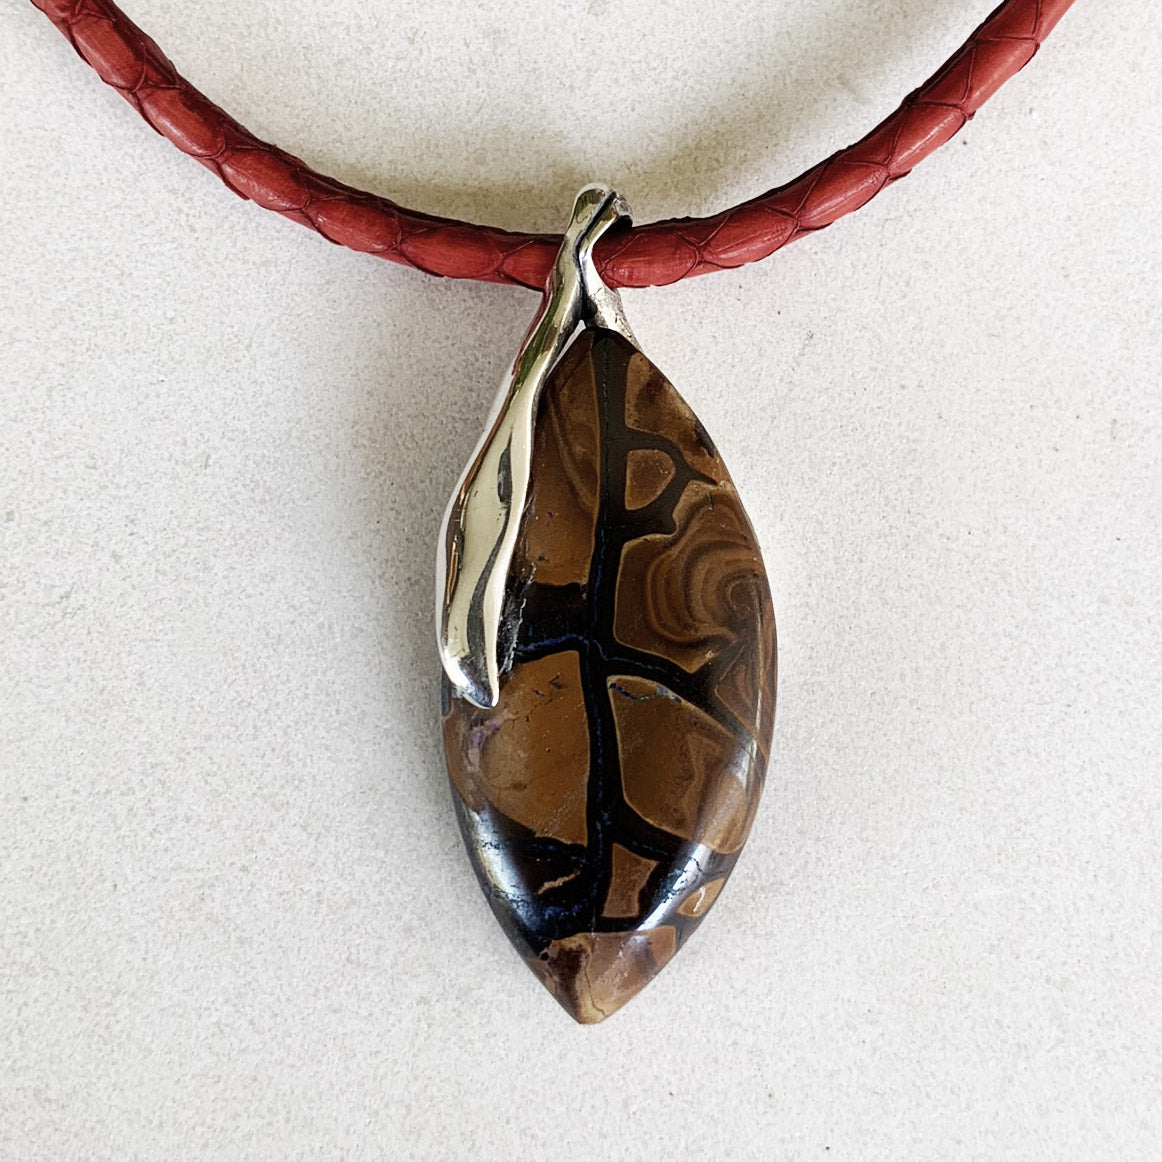 Boulder opal pendant on red leather necklet